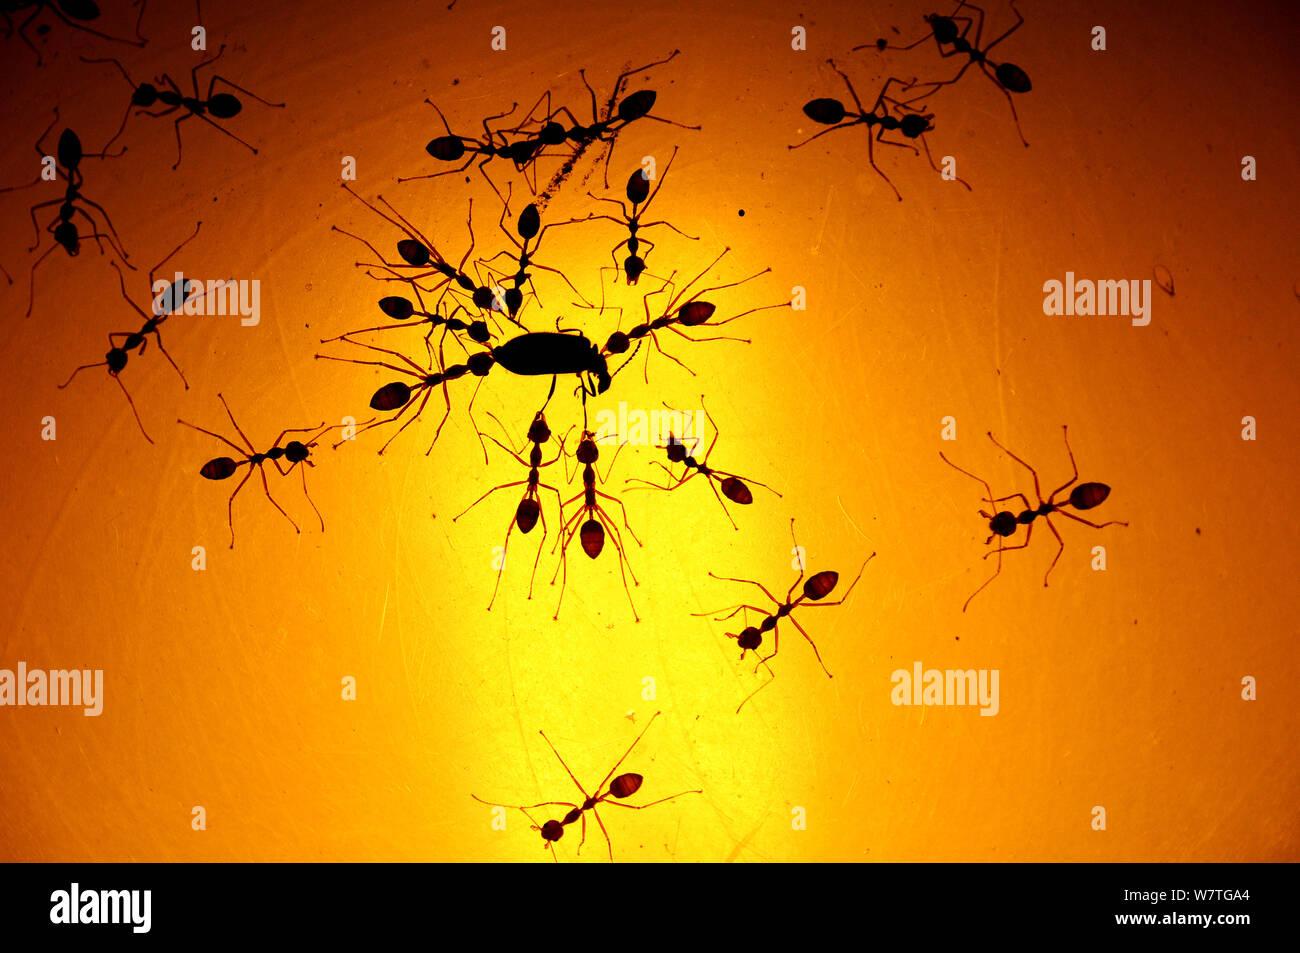 Ameisen preying auf Käfer; diese Ameisen warten auf Glühlampe Insekten zum Licht angezogen zu fangen, Royal Chitwan Nationalpark, Nepal. Stockfoto